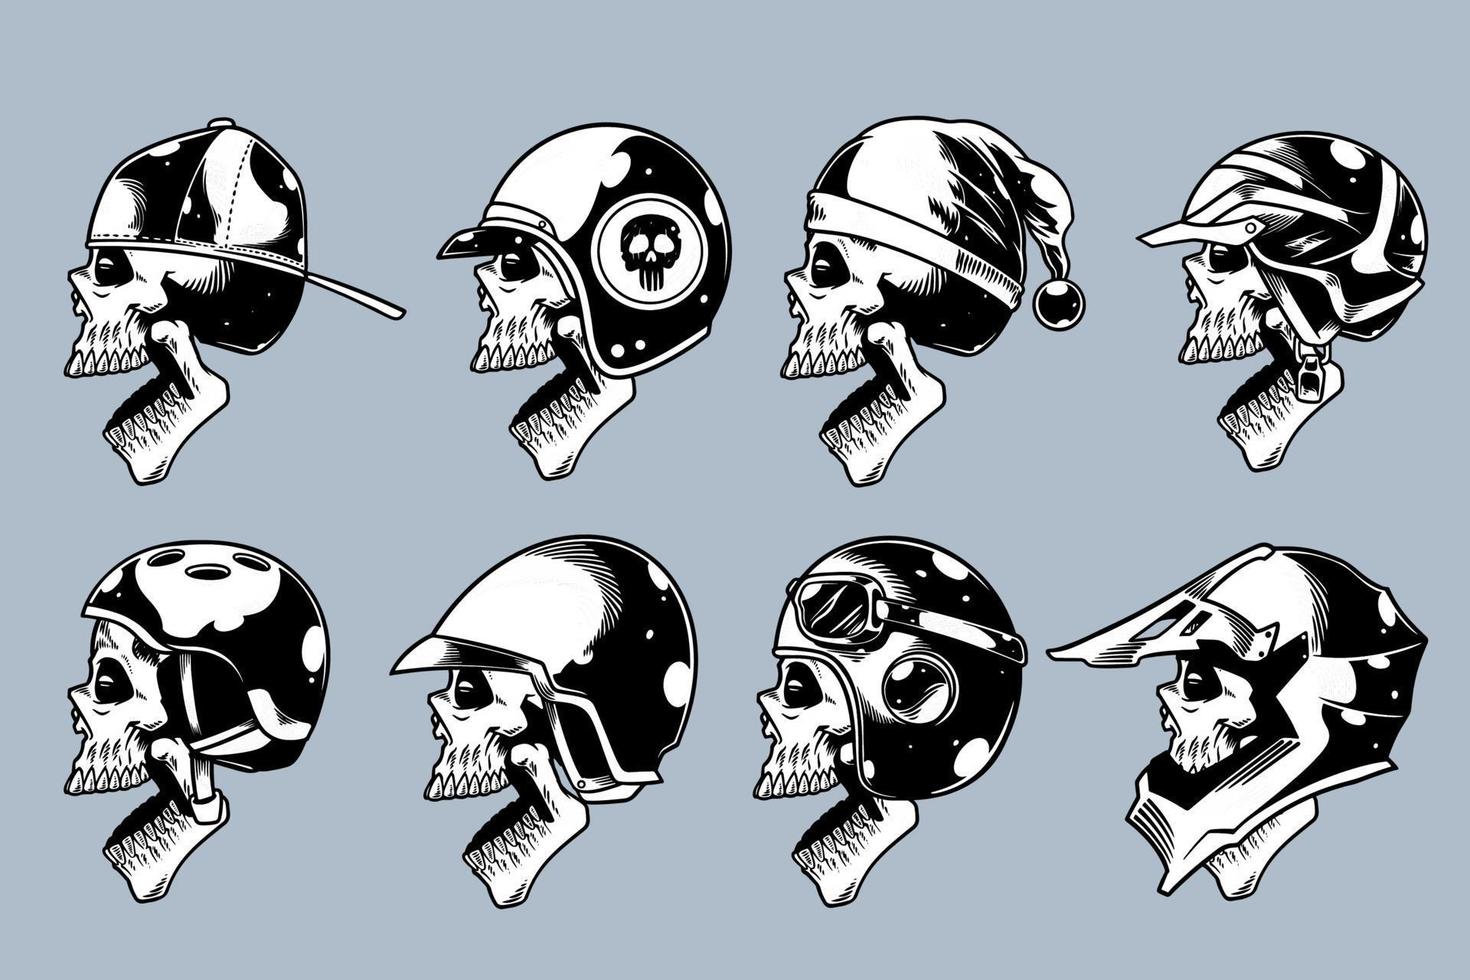 schedel hoofd met verschillende roer op en open mond illustratie set zwart-wit stijl vector